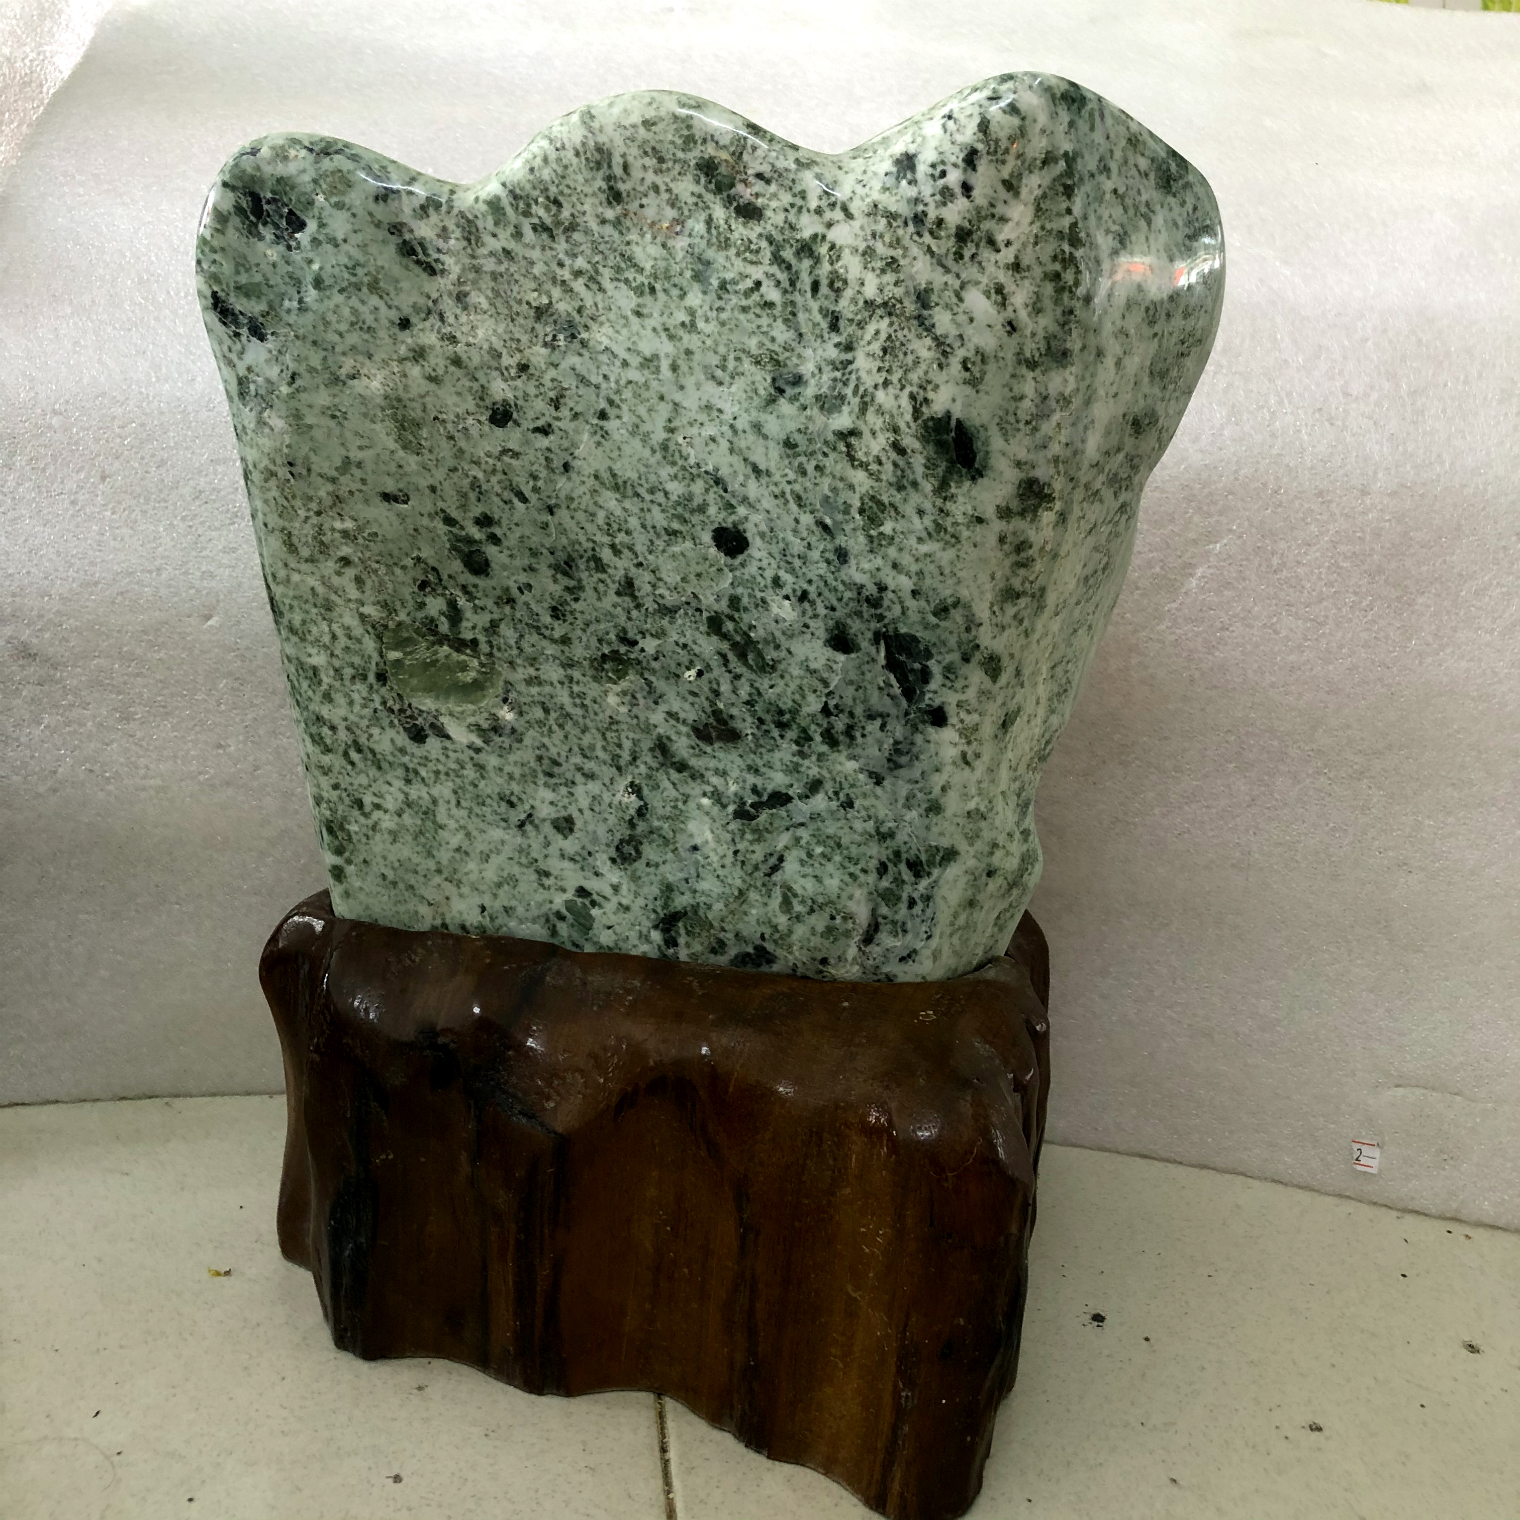 Cây đá tự nhiên serpentine màu xanh lá cho người mệnh Hỏa và Mộc nặng khoảng 10 kg gồm chân đế gỗ rừng hình cánh quạt daphongthuymynghe